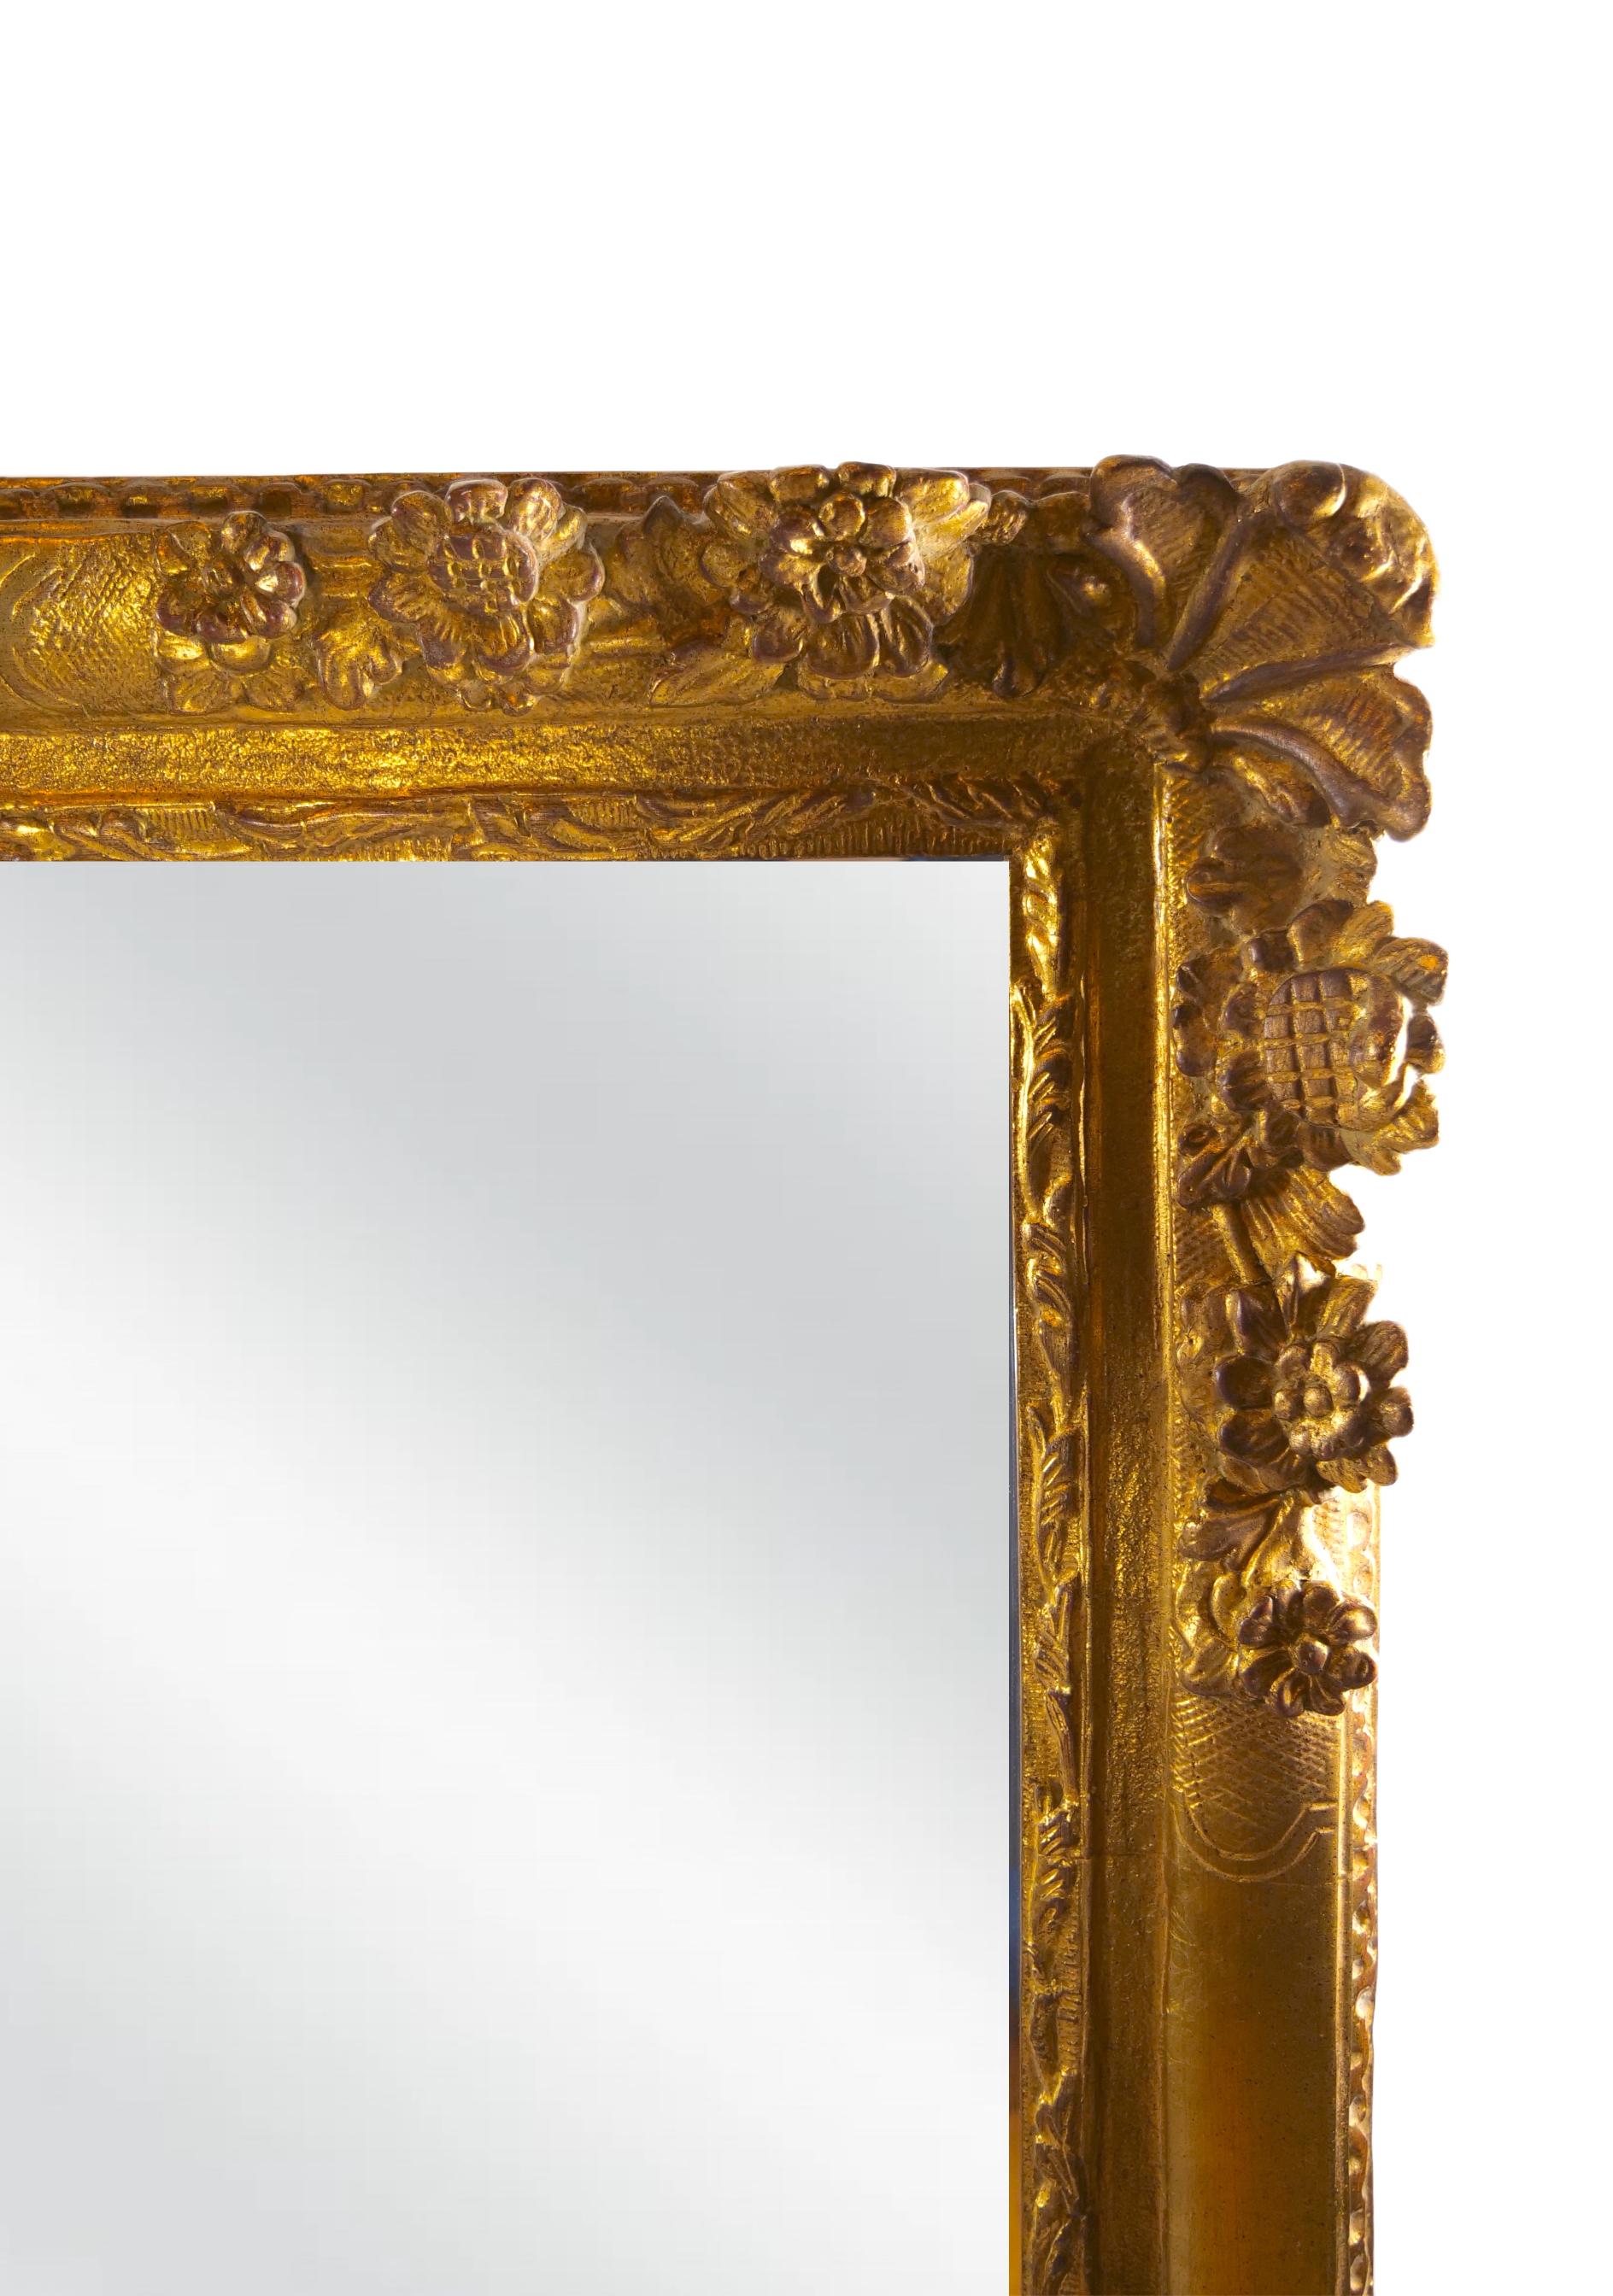 Début du 20e siècle, très grand miroir mural de style Louis XVI, avec cadre en bois doré, biseauté et décoré de motifs floraux. Le miroir est en excellent état. Usure mineure appropriée à l'âge / à l'utilisation. Il mesure 60 pouces de haut x 49